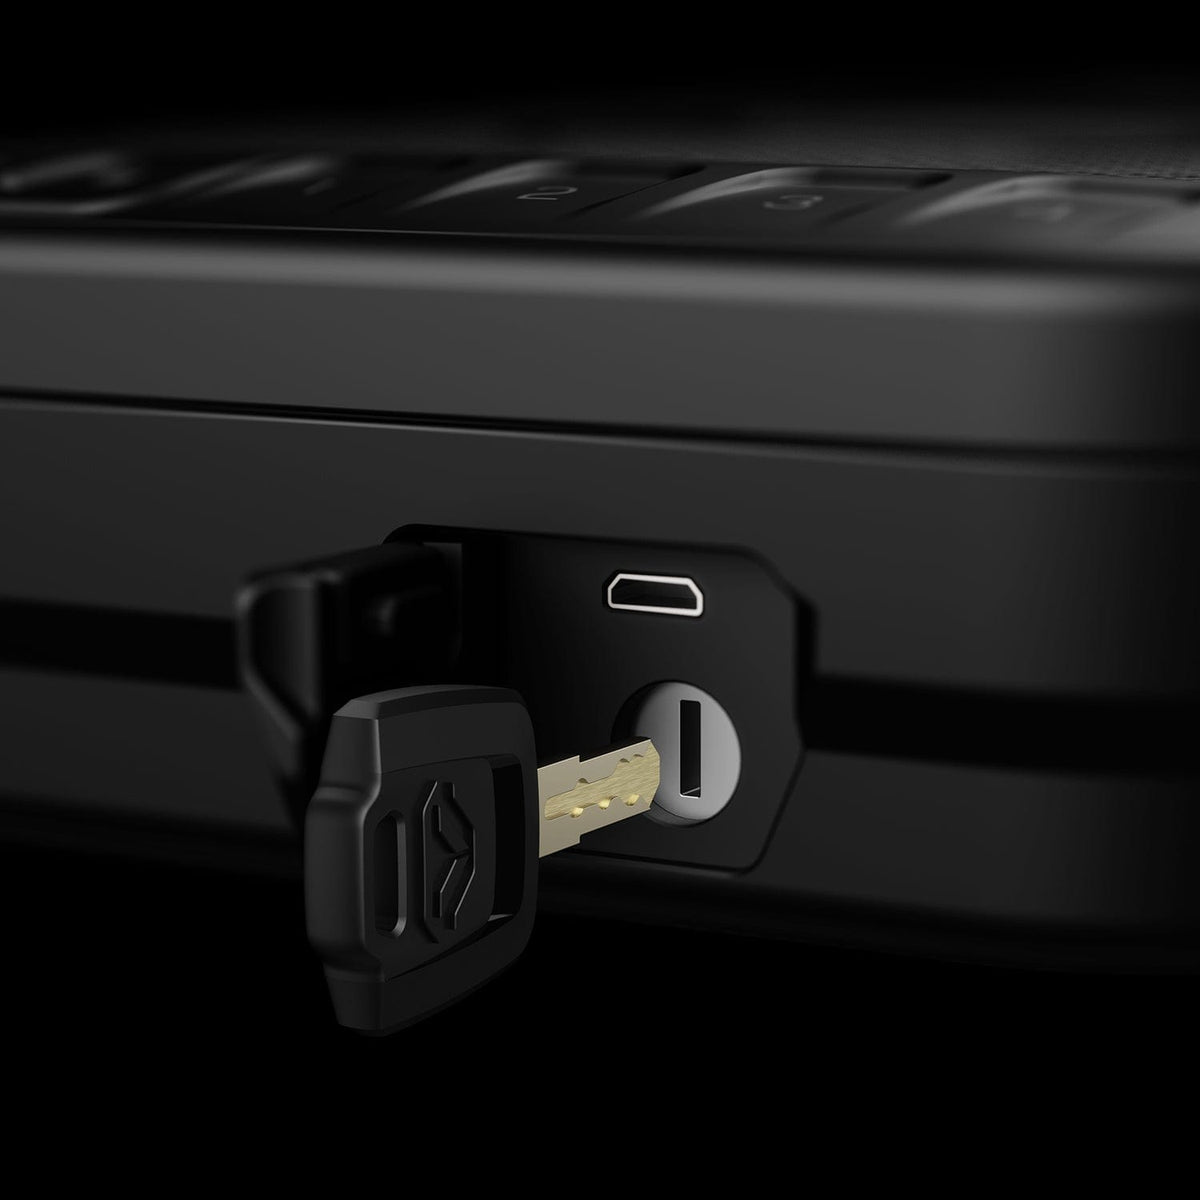 Vaultek SIG LifePod Rugged Weather Resistant Lockbox Biometric Armadillo Safe and Vault